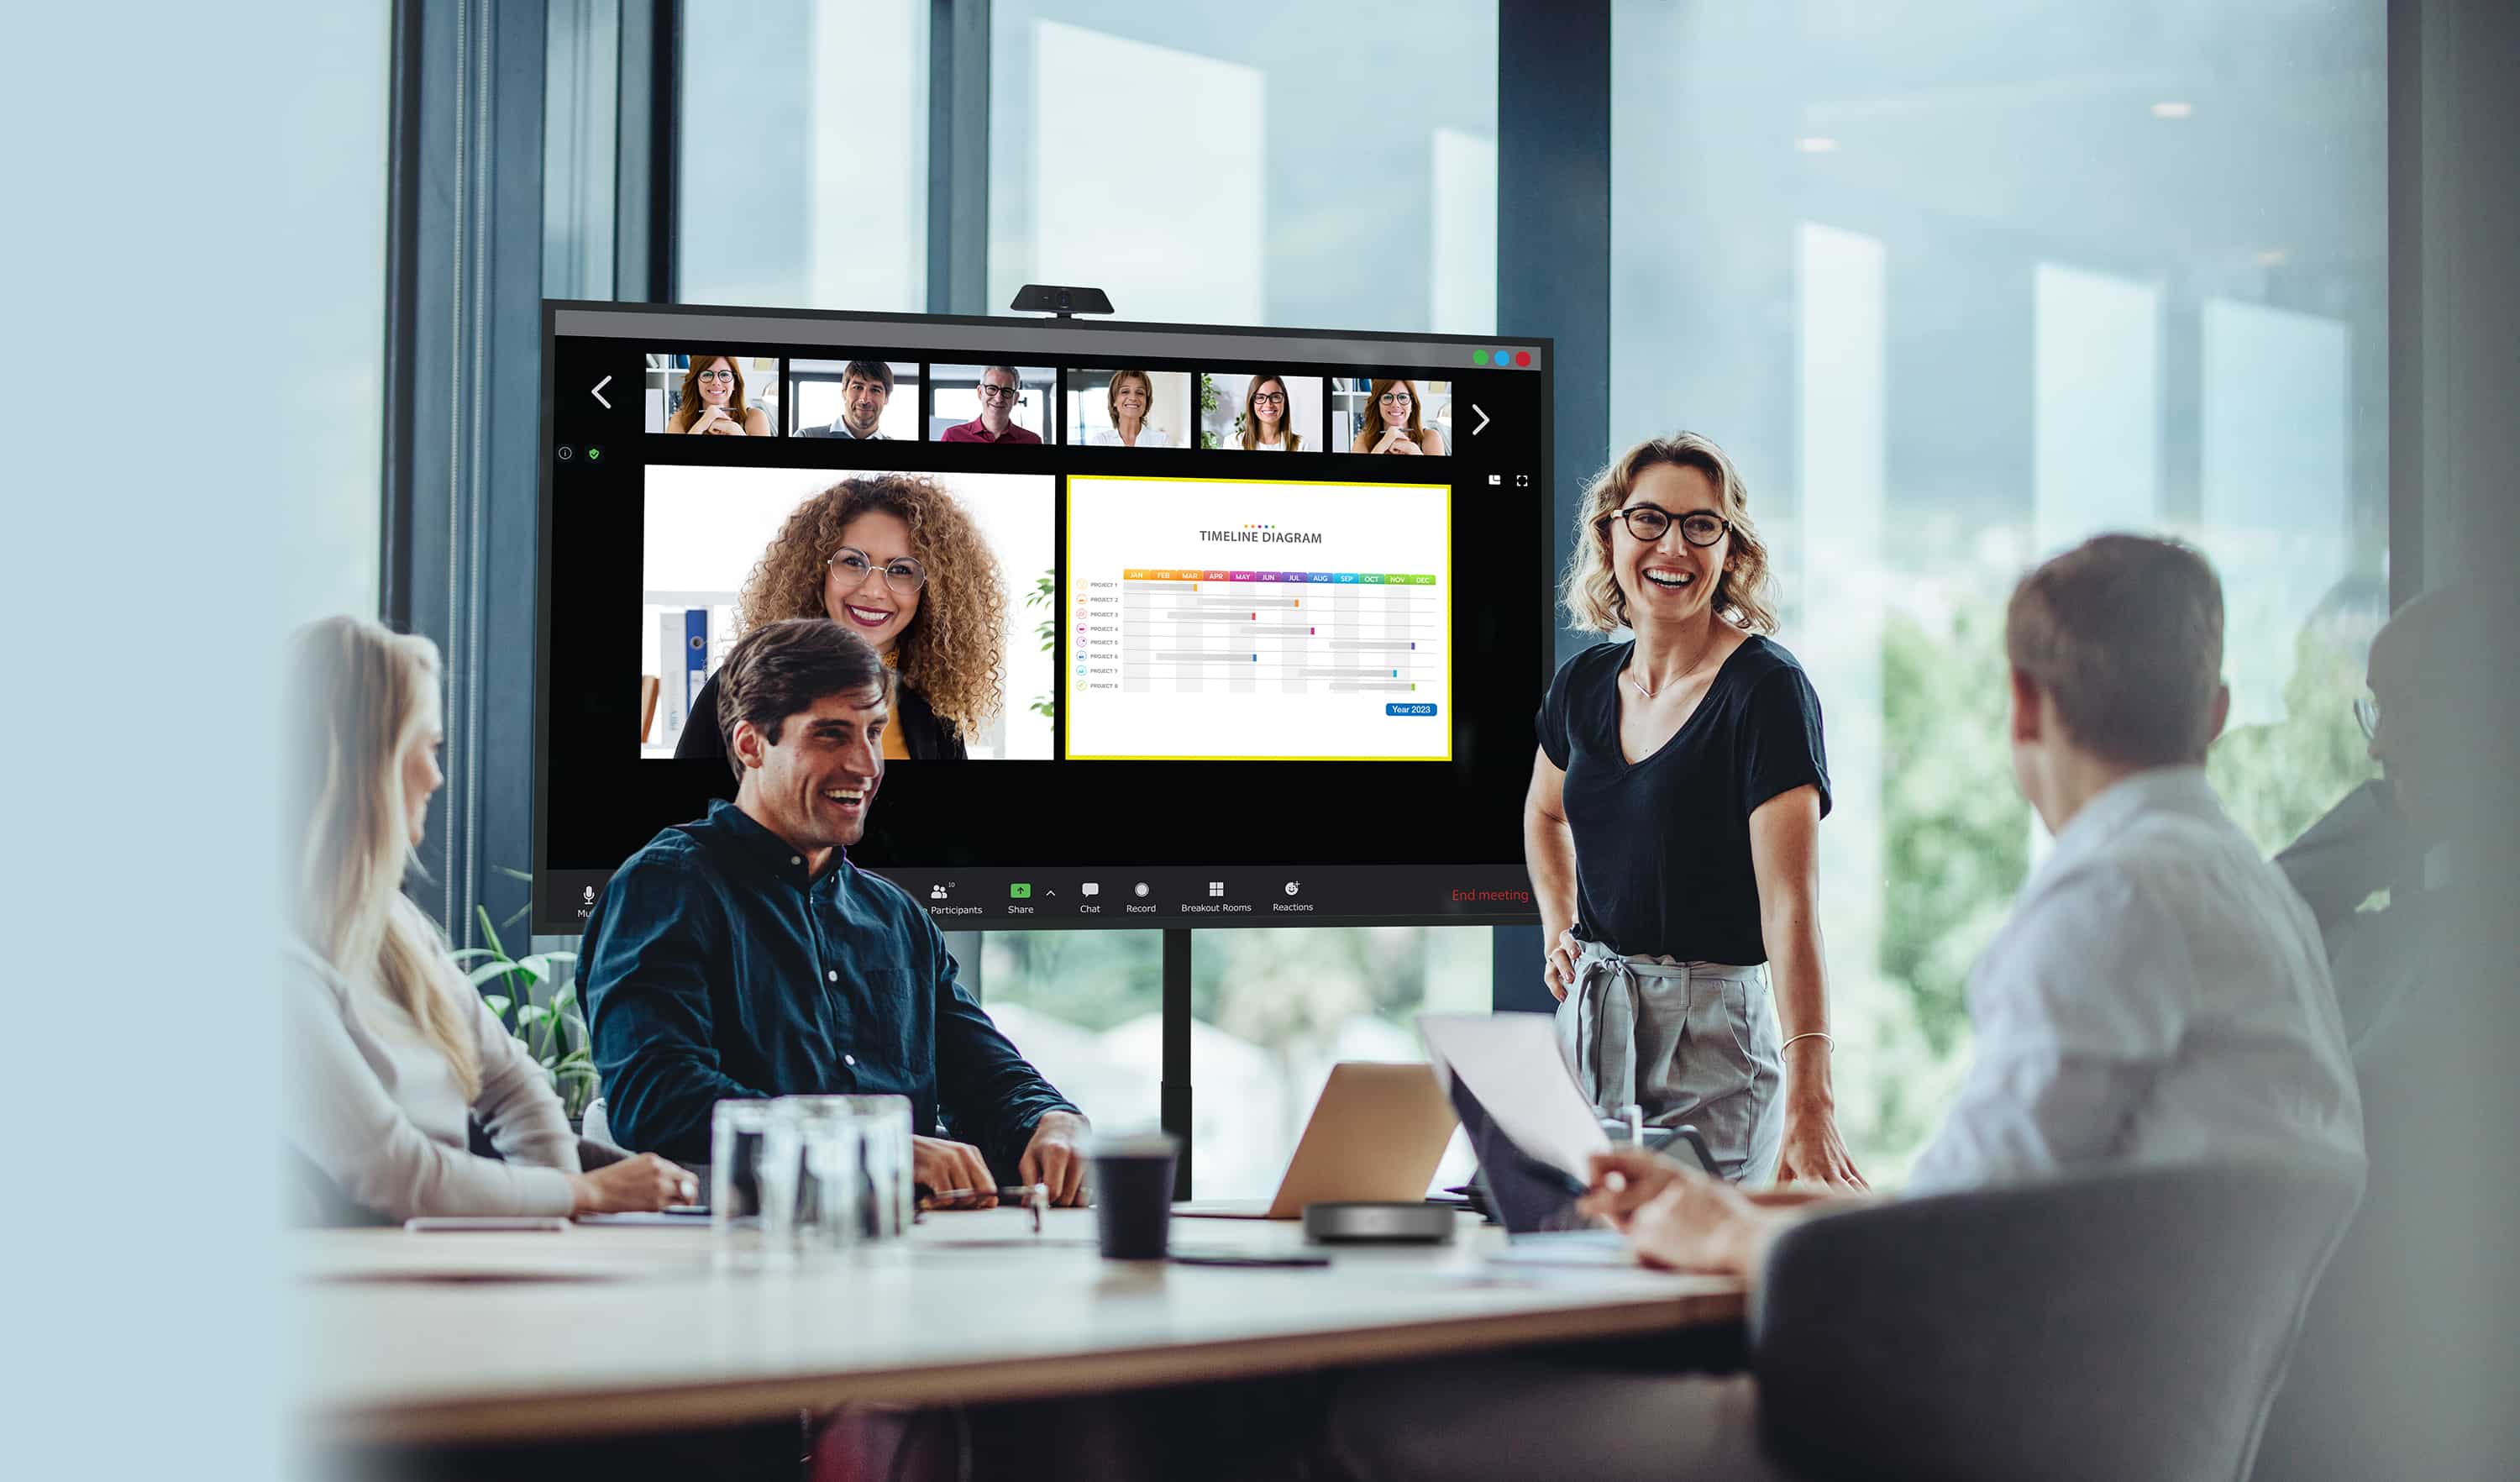 Uomini d'affari che conducono una riunione con parte del personale fisicamente presente che guarda un display Optoma N-Series mentre i loro colleghi remoti vengono mostrati sullo schermo accanto al contenuto che stanno condividendo.